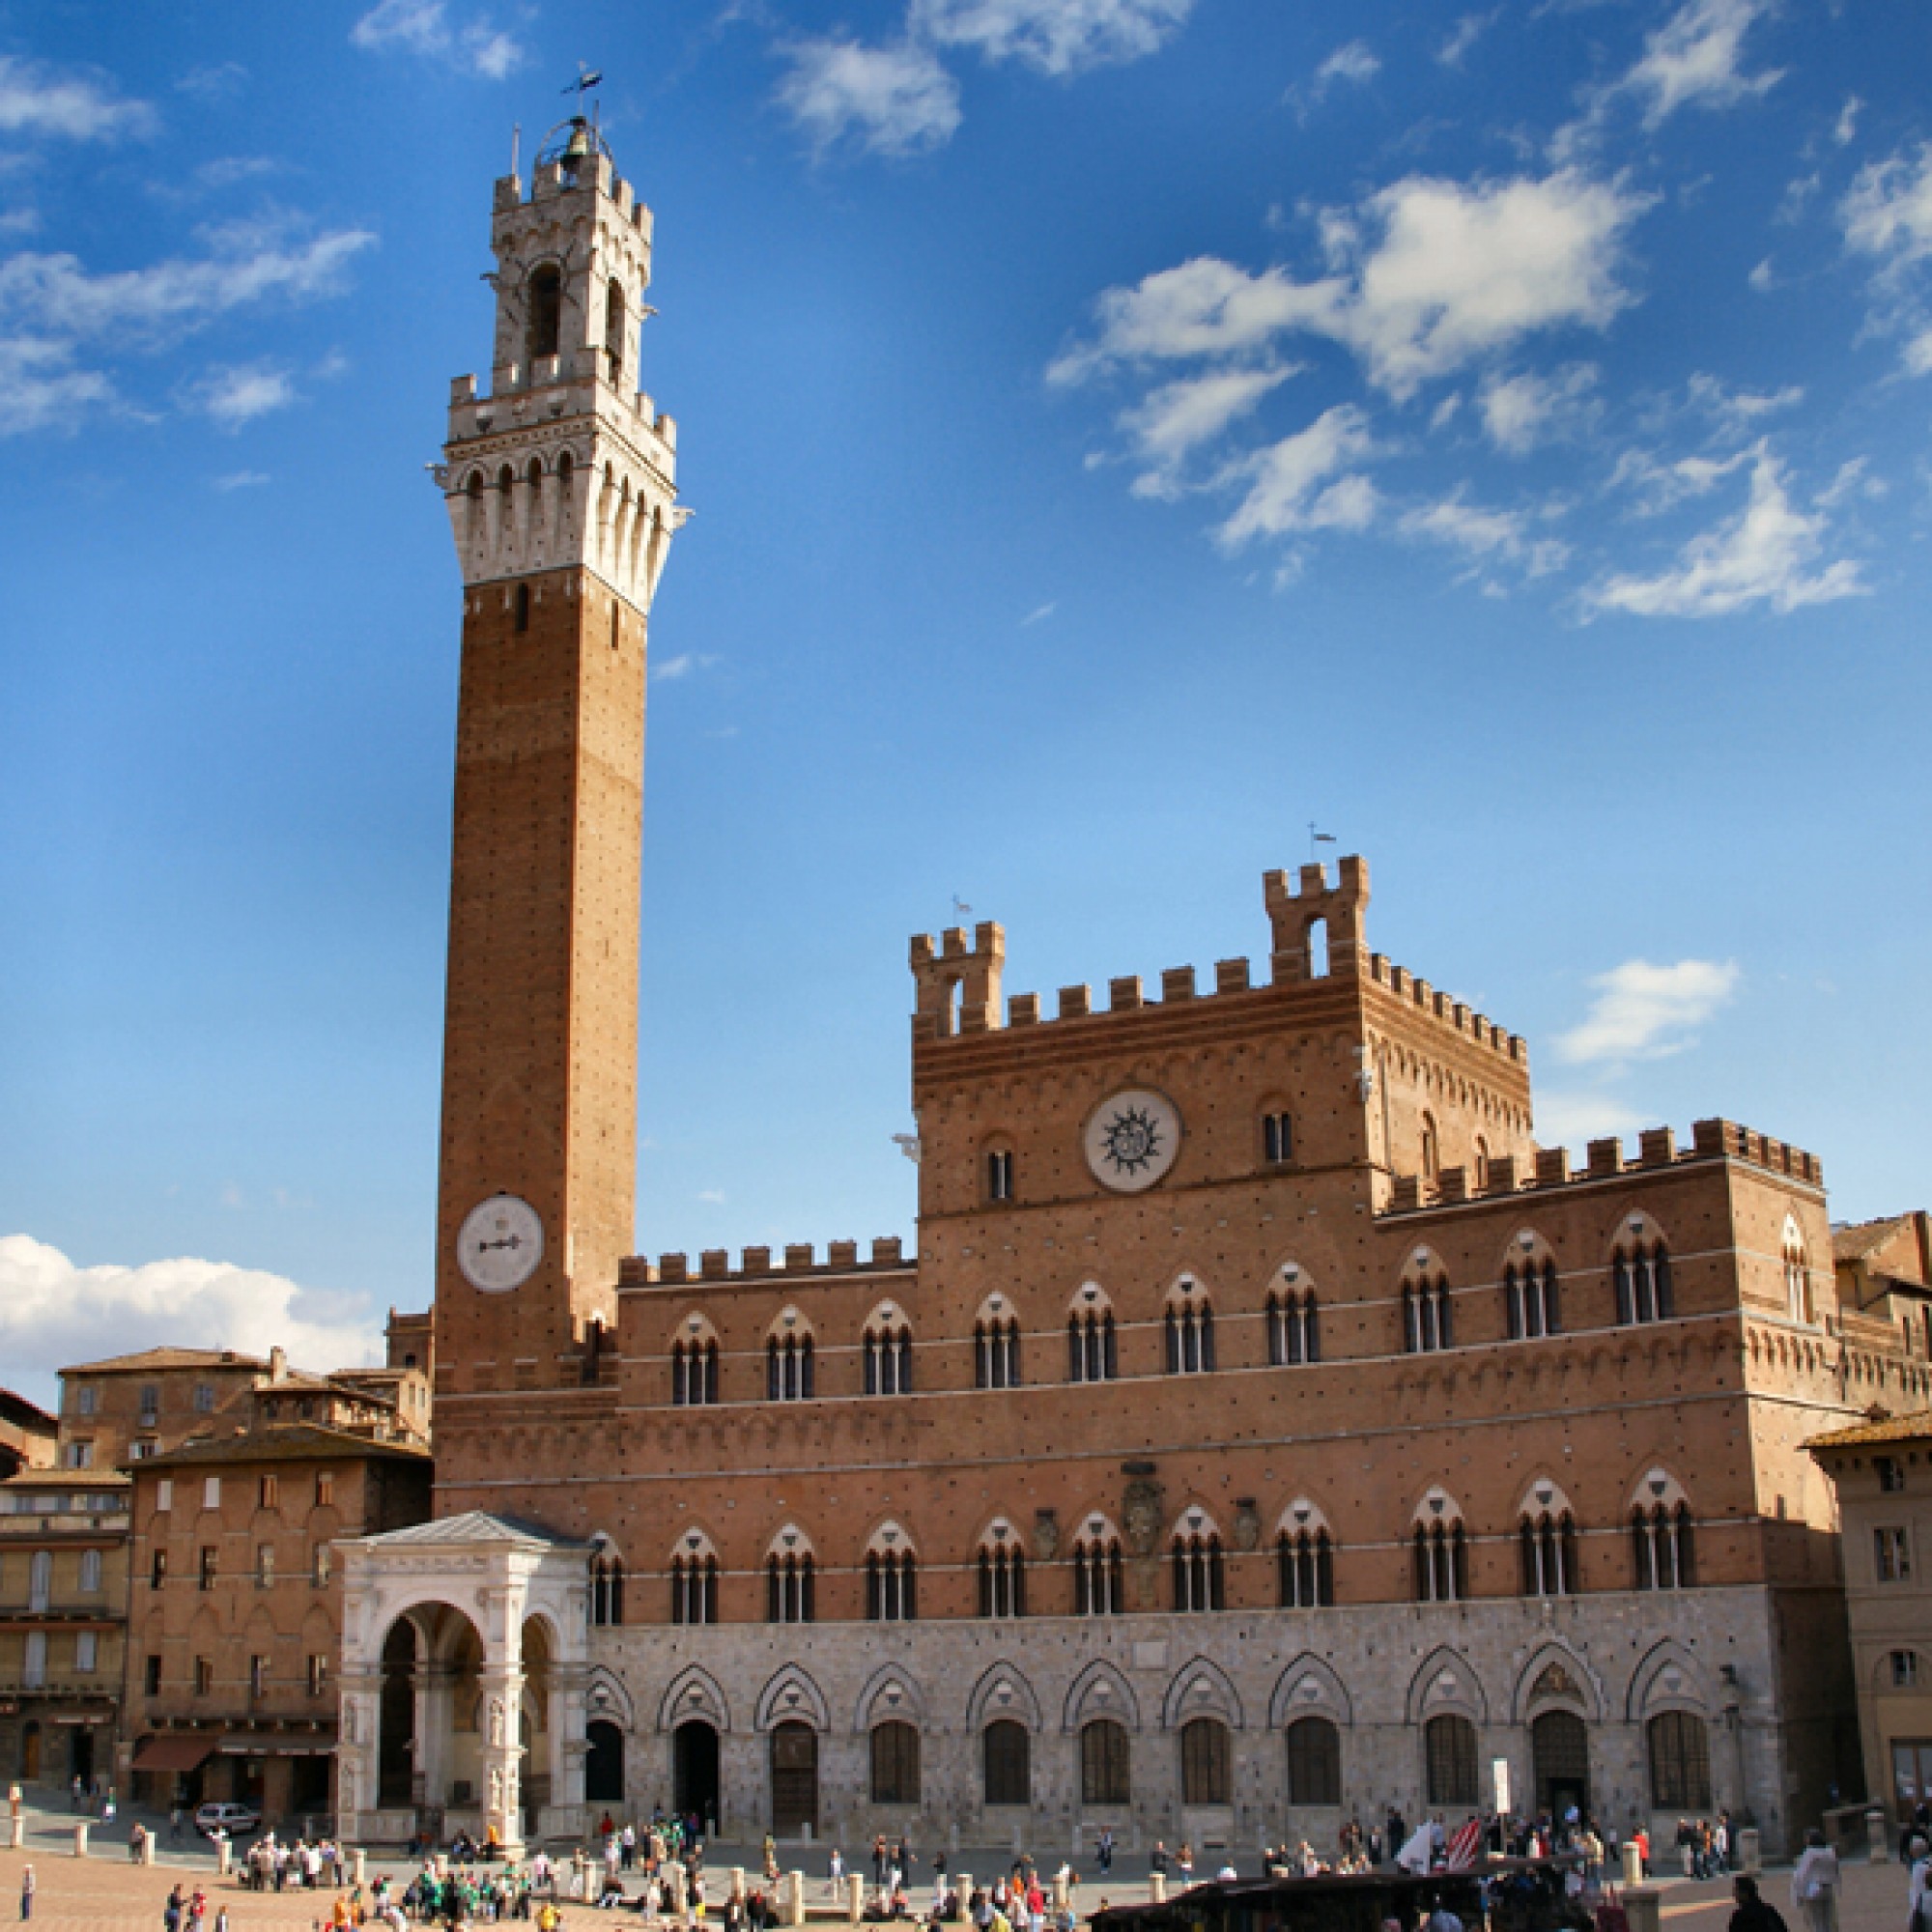 Siena ist bekannt für den Palio di Siena, das Pferderennen, das am zentralen Platz Piazza del Campo ausgetragen wird. Die Stadtmauer wird restauriert (Foto: Matthias Brinker_Pixelio)